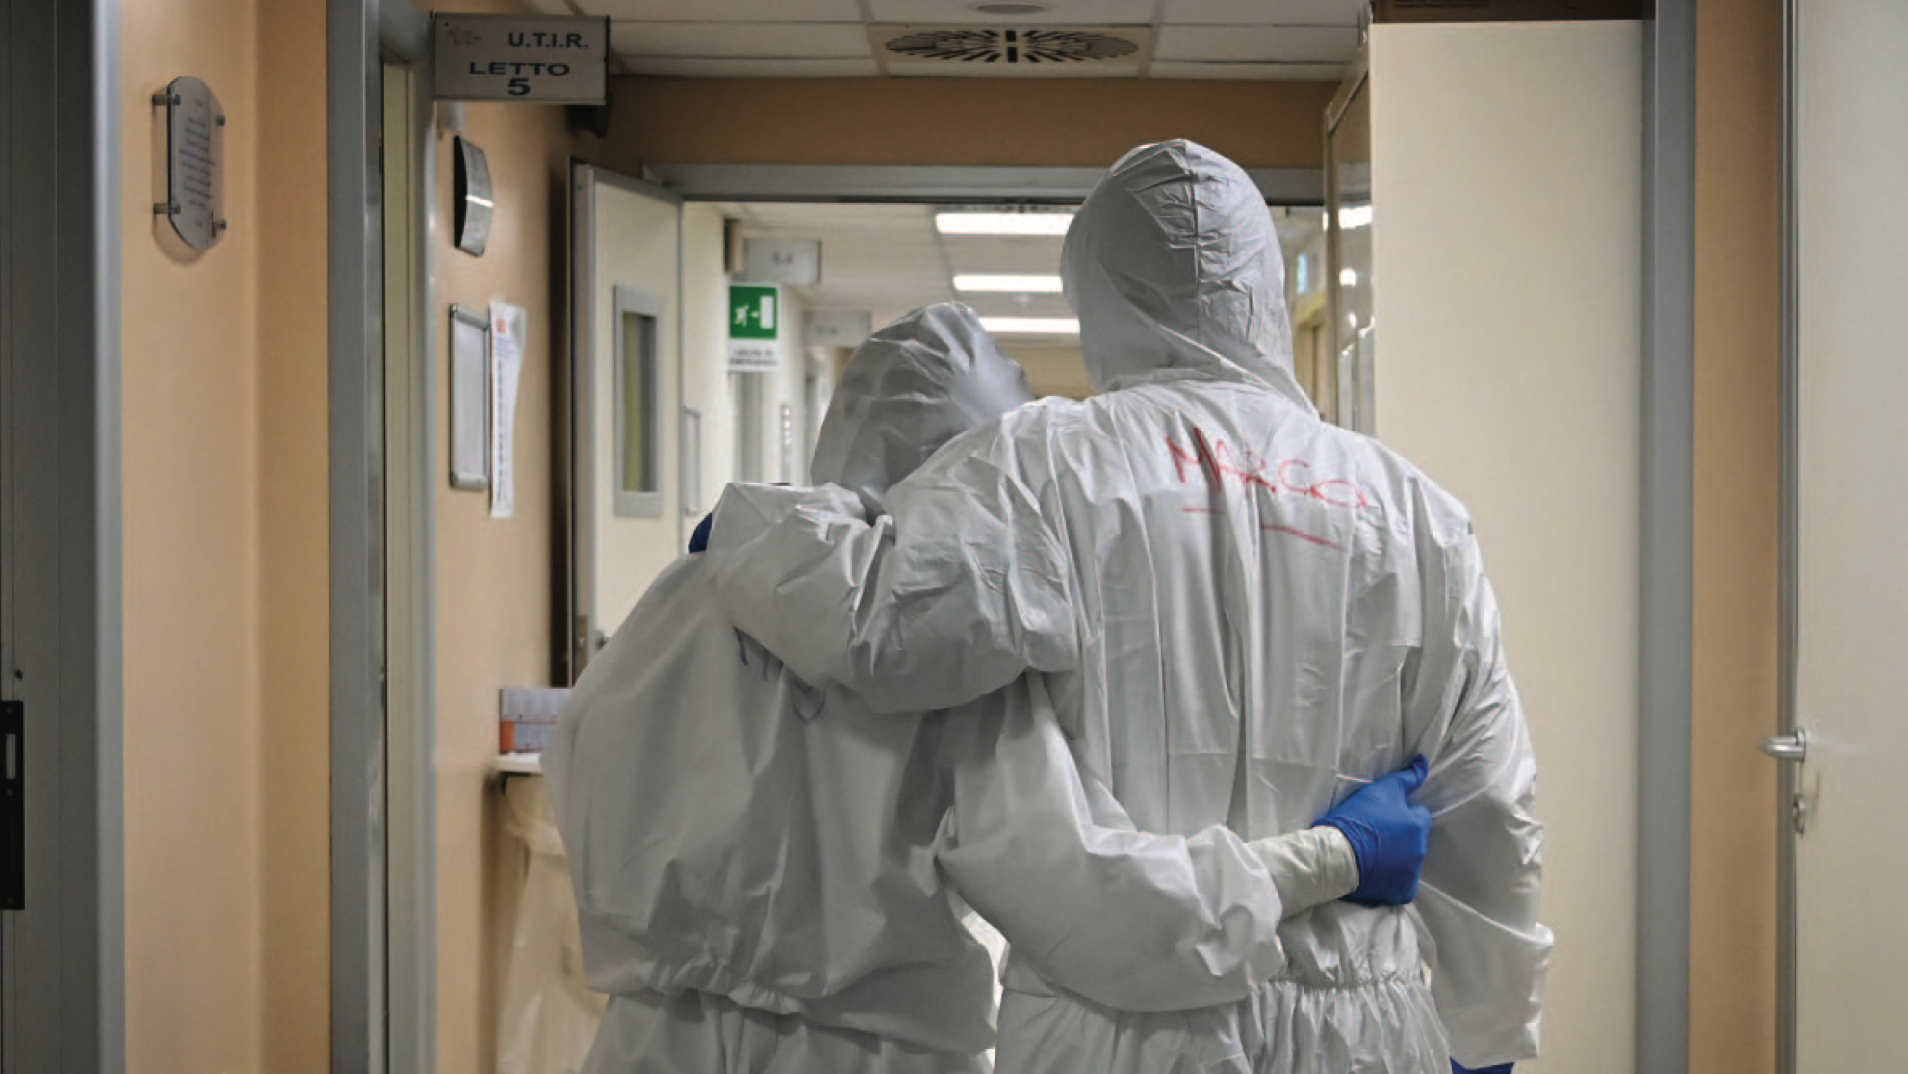 طبيب وممرضة بملابس واقية بعد انتهاء عملهما في وحدة العناية المركزة التي تعالج مرضى كوفيد-19 في مستشفى في روما في نيسان (أبريل) 2020